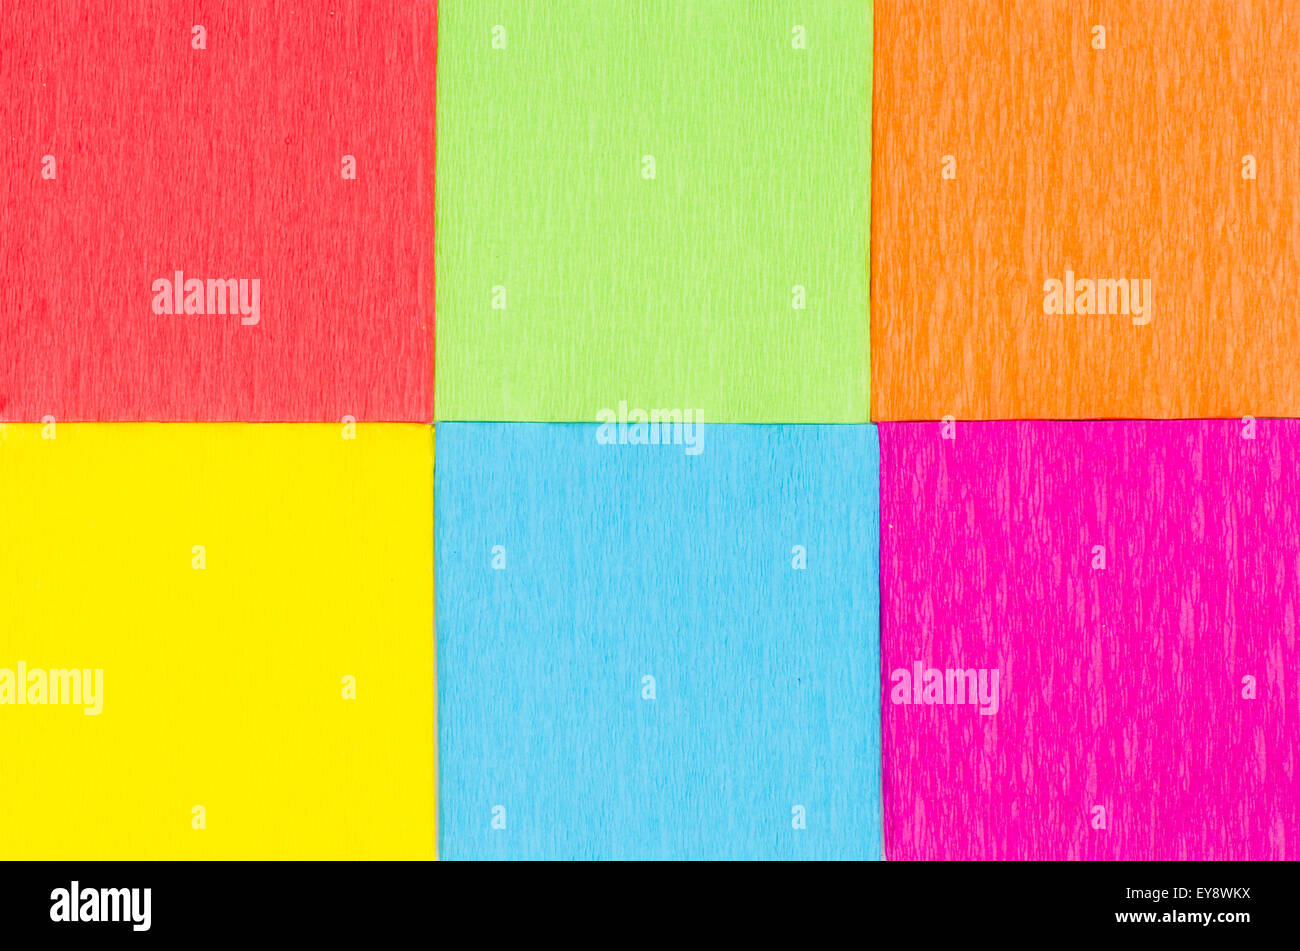 Texture de fond carrés de papier multicolores Banque D'Images